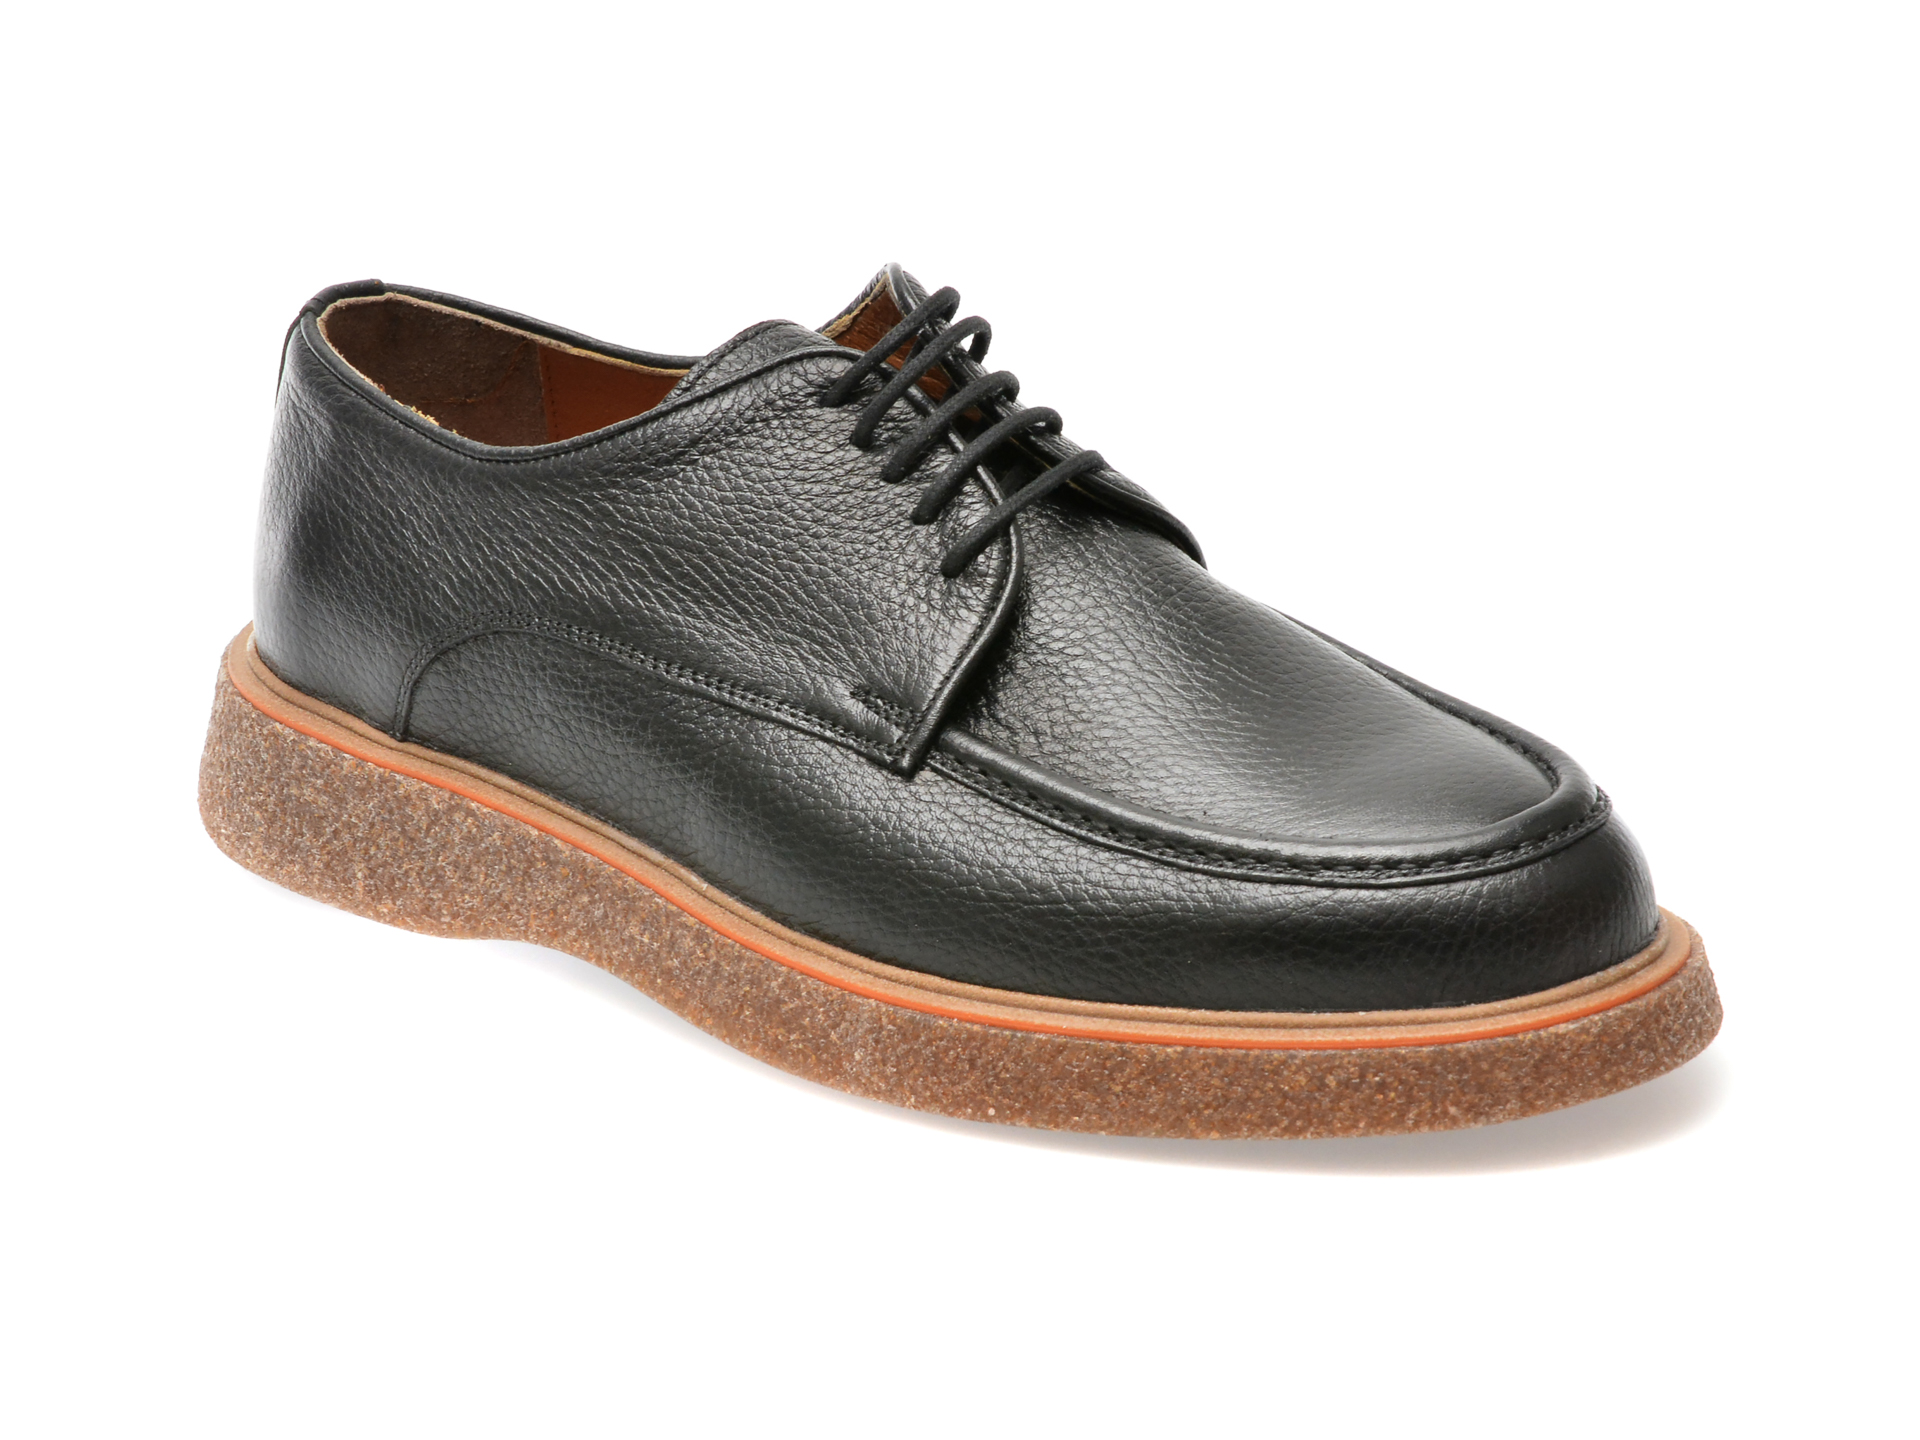 Pantofi AXXELLL negri, AYK001, din piele naturala /barbati/pantofi